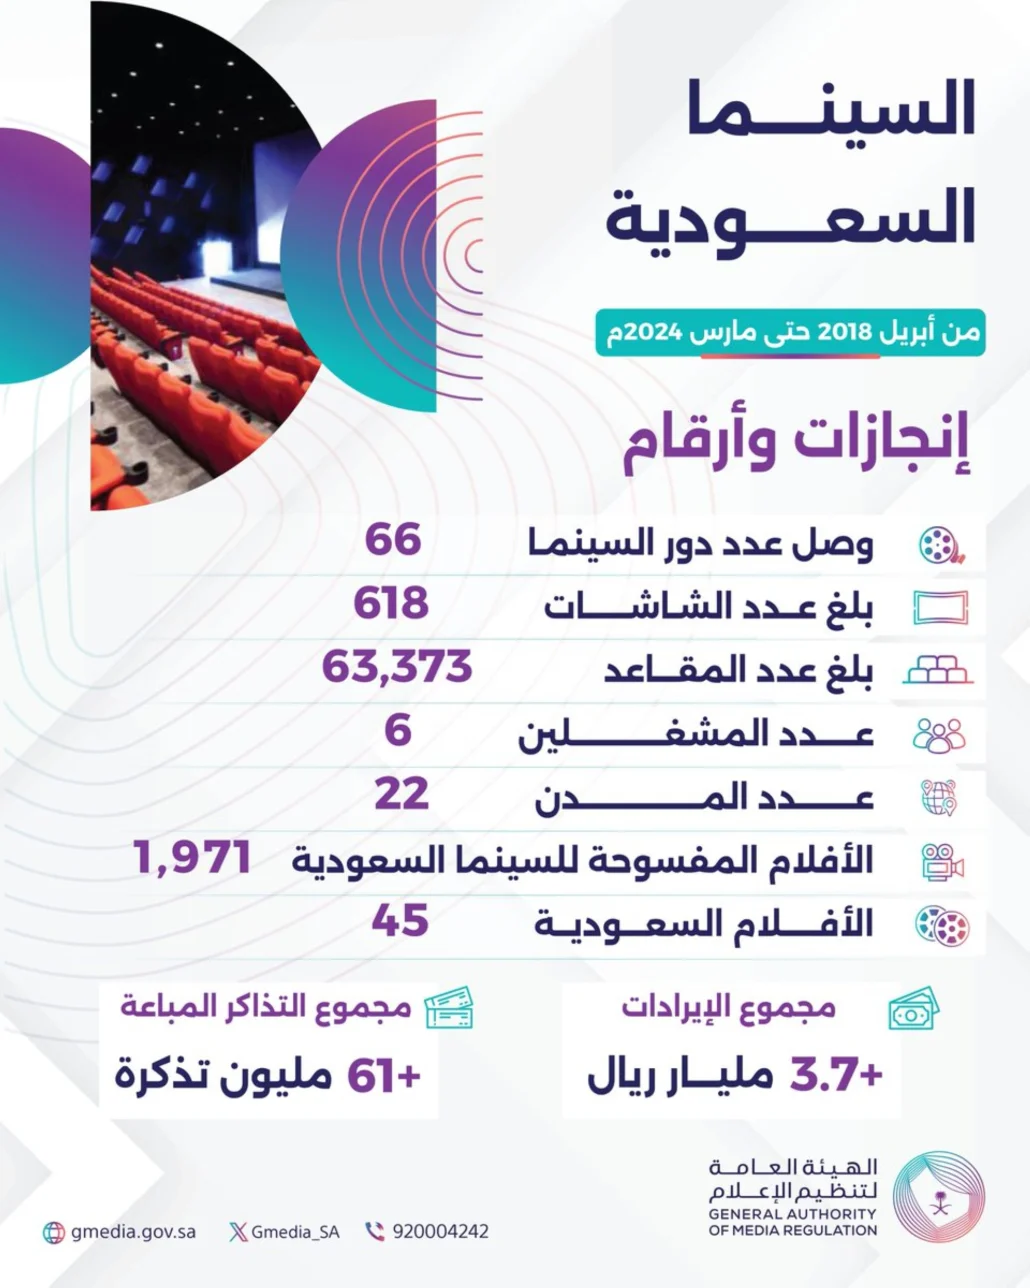 أرقام السينما السعودية في 6 سنوات